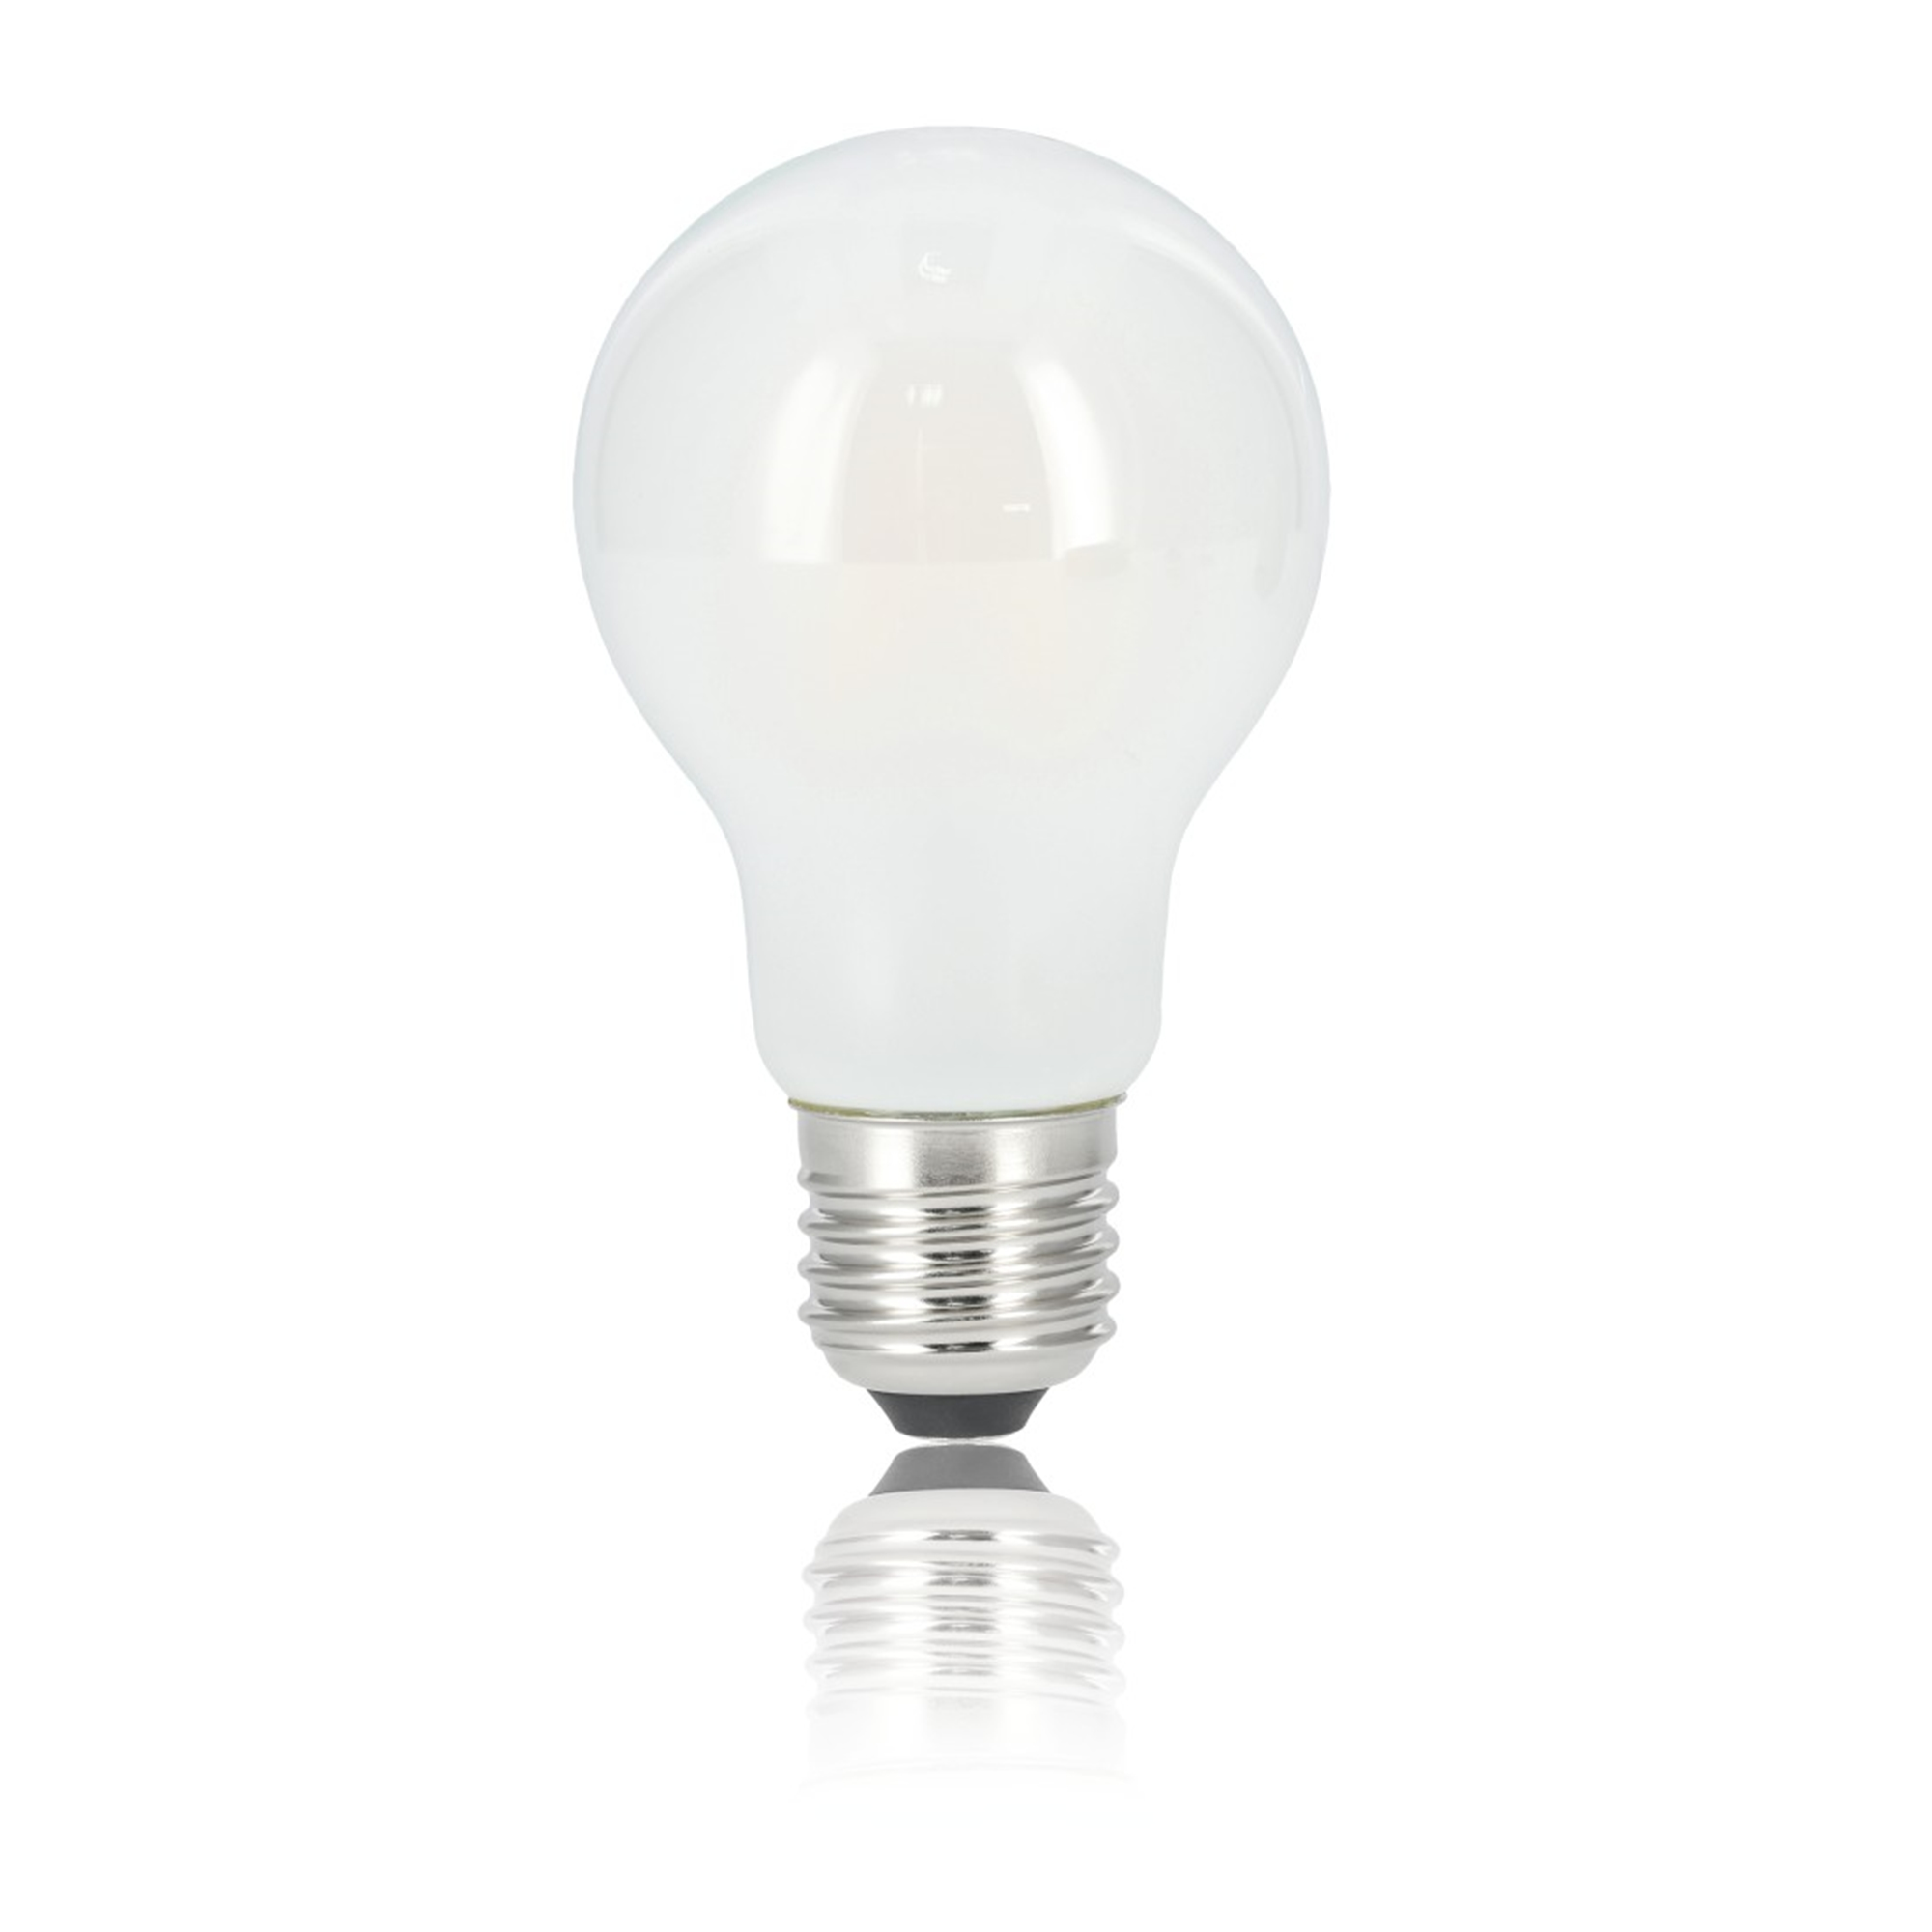 XAVAX E27, 60W 806lm E27 Warmweiß LED-Lampe ersetzt